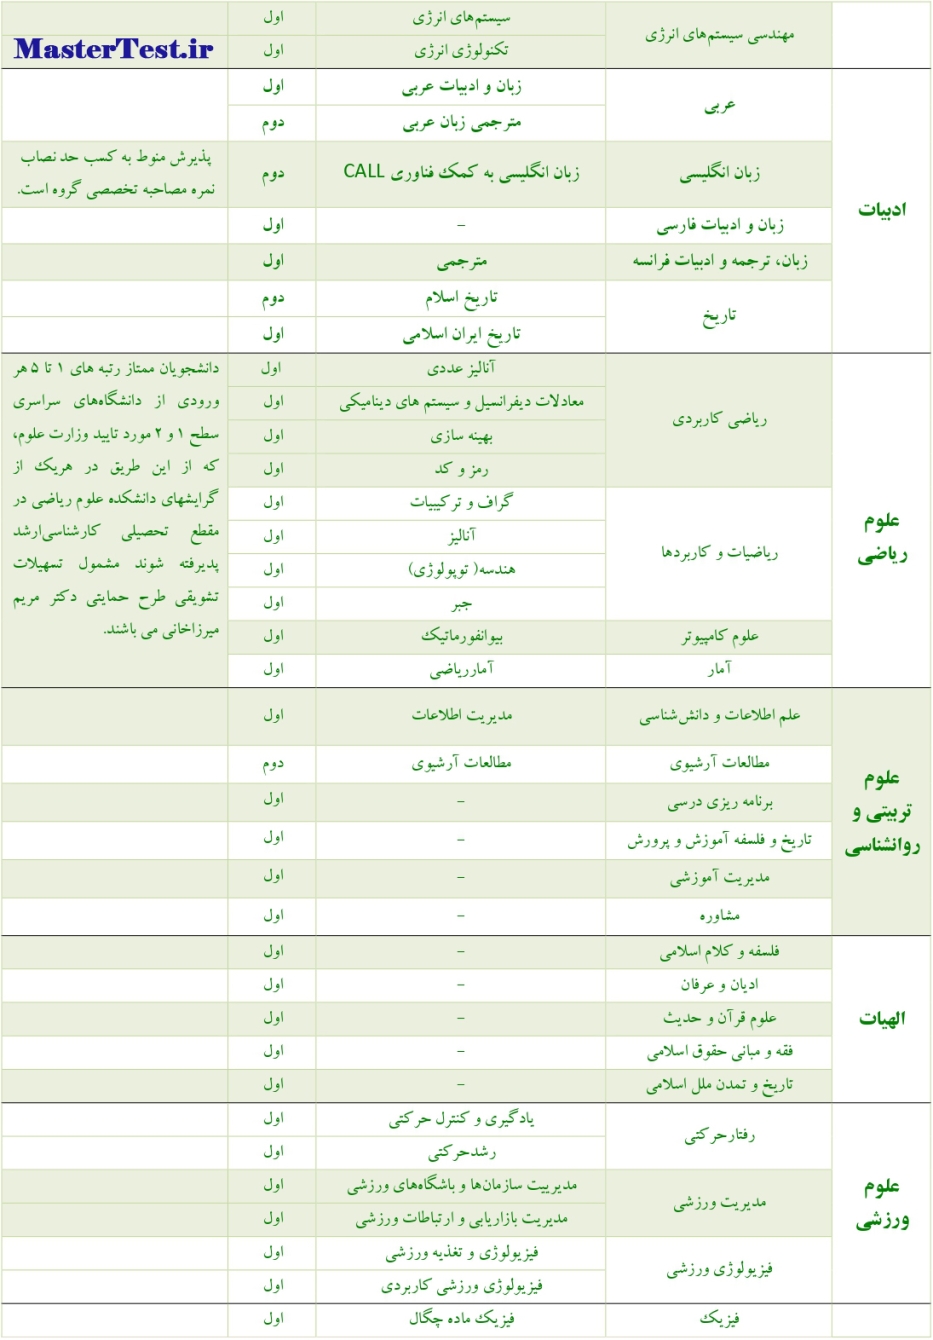 رشته های بدون آزمون کارشناسی ارشد دانشگاه الزهرا ص2